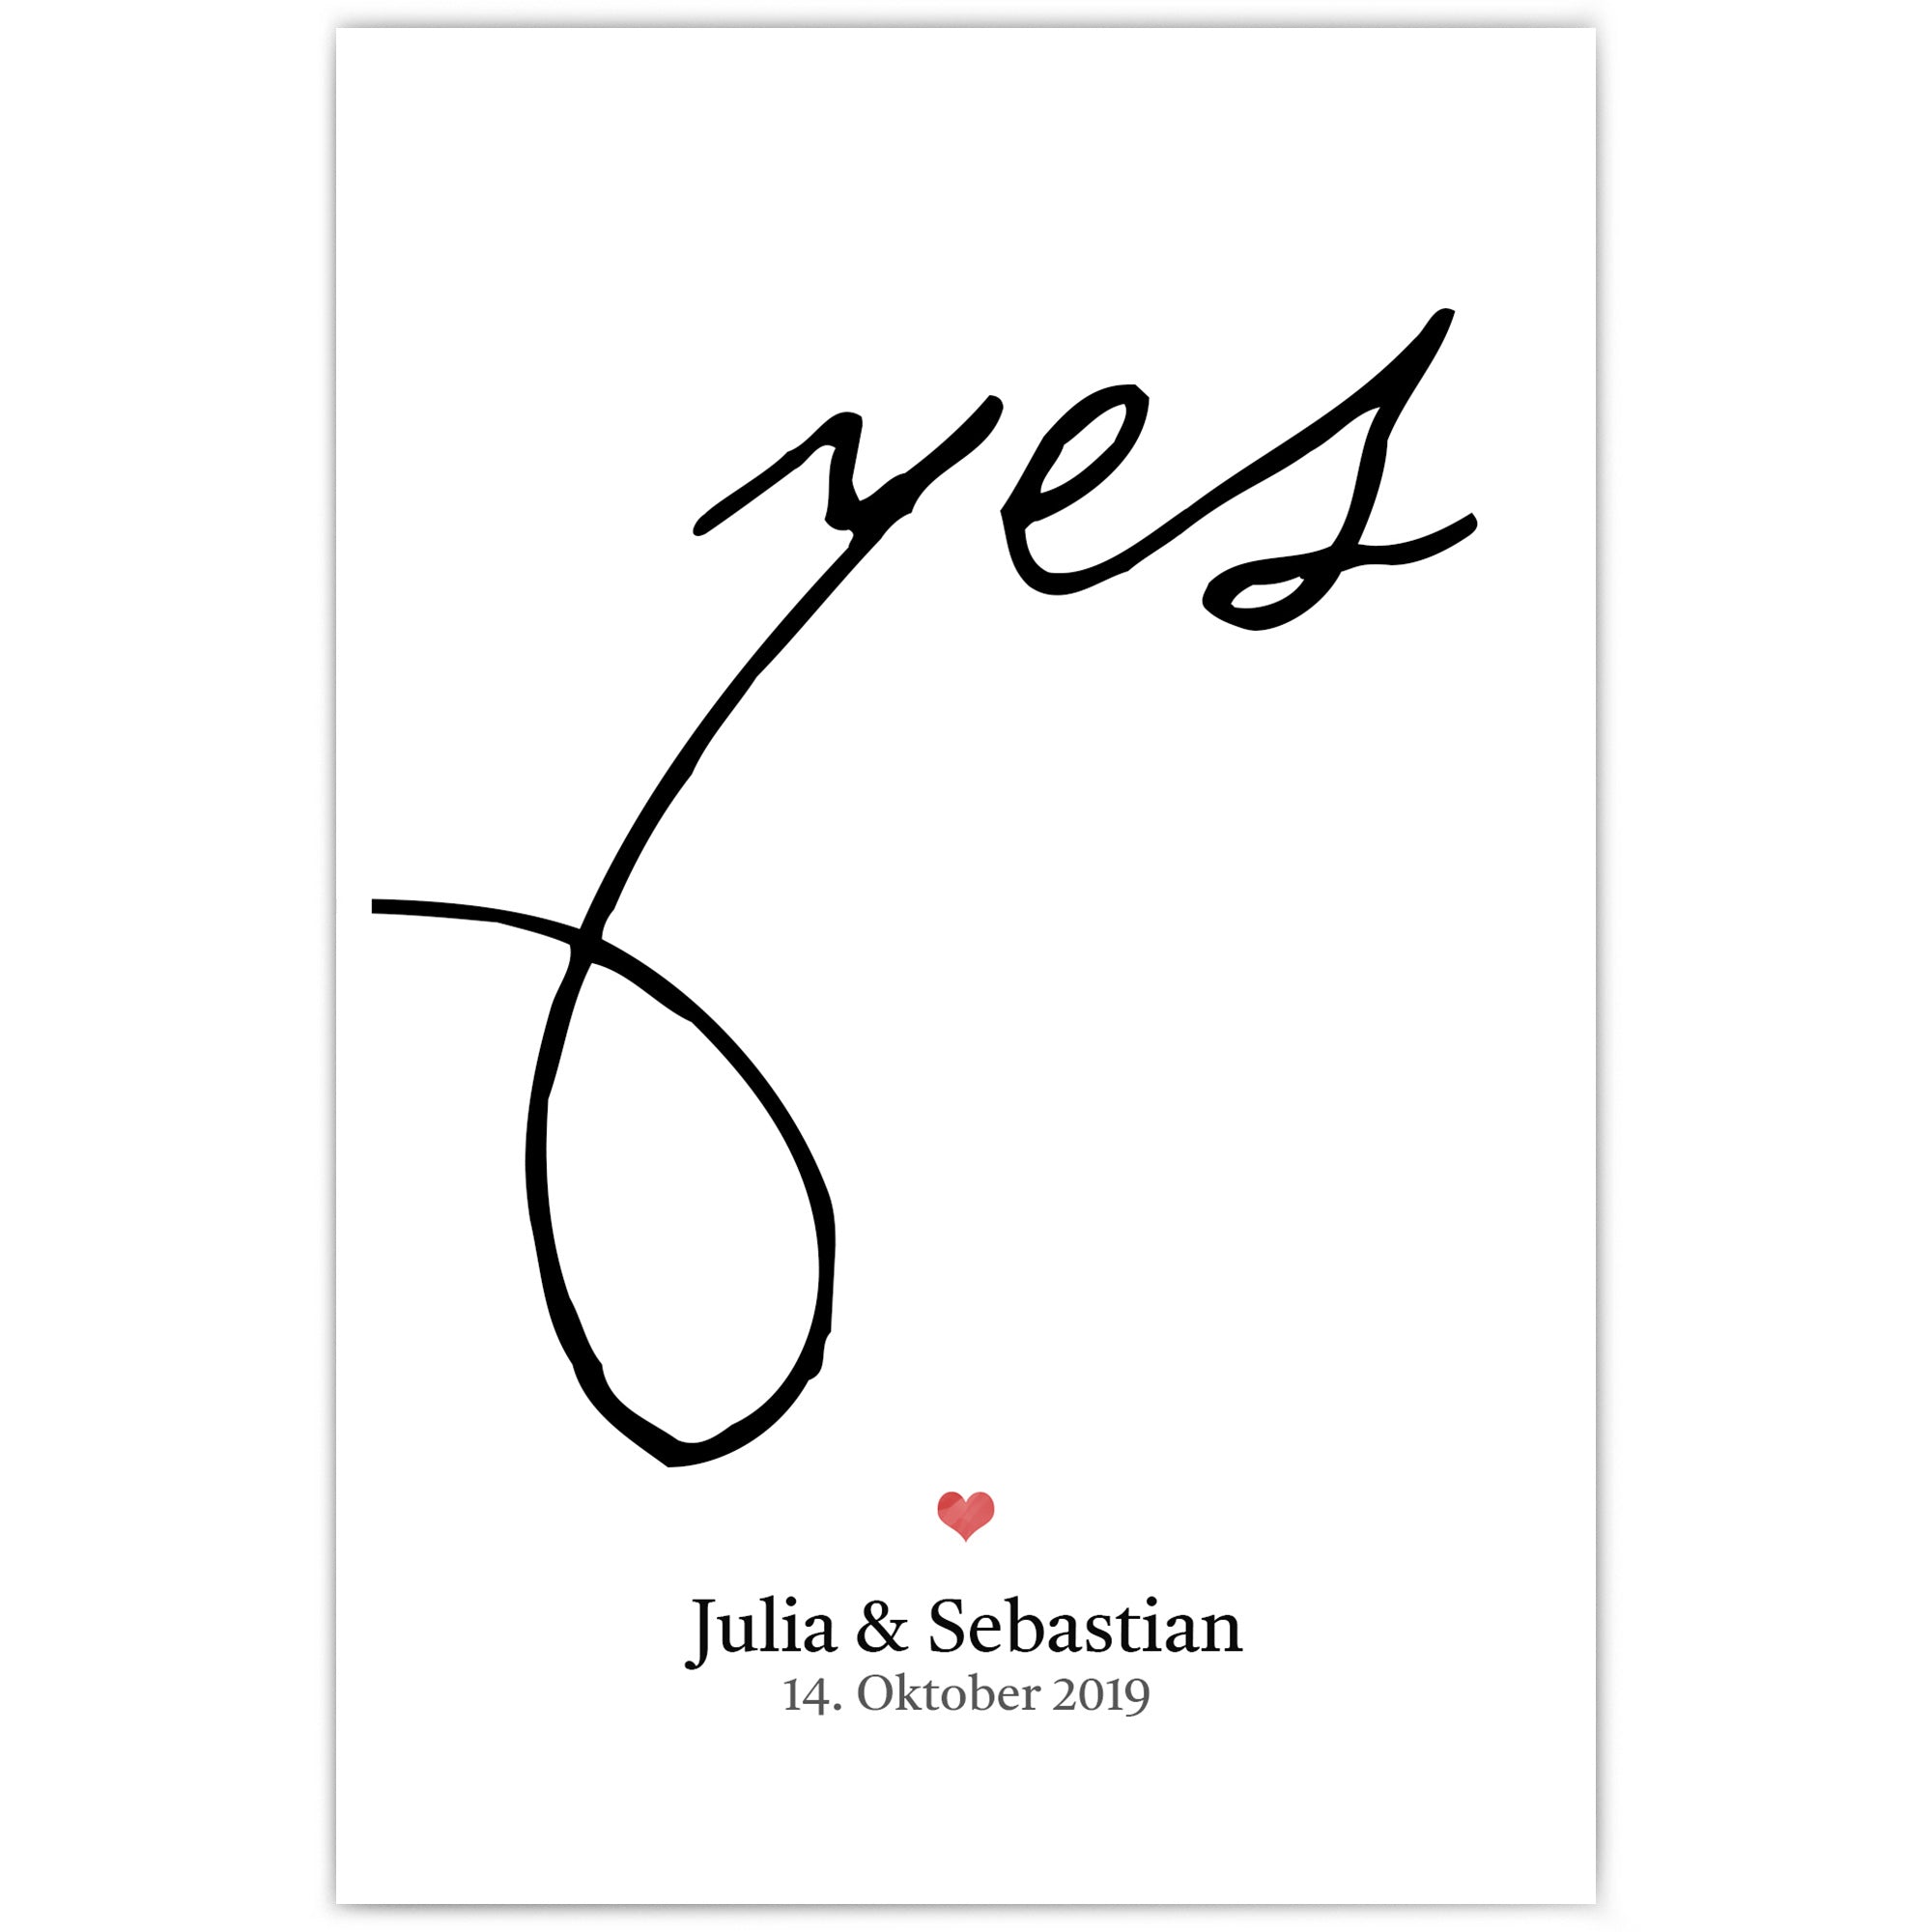 Personalisiertes Hochzeit Poster. Großes Yes in schwarz, darunter ein rotes Herz mit individuellen Namen und Datum.